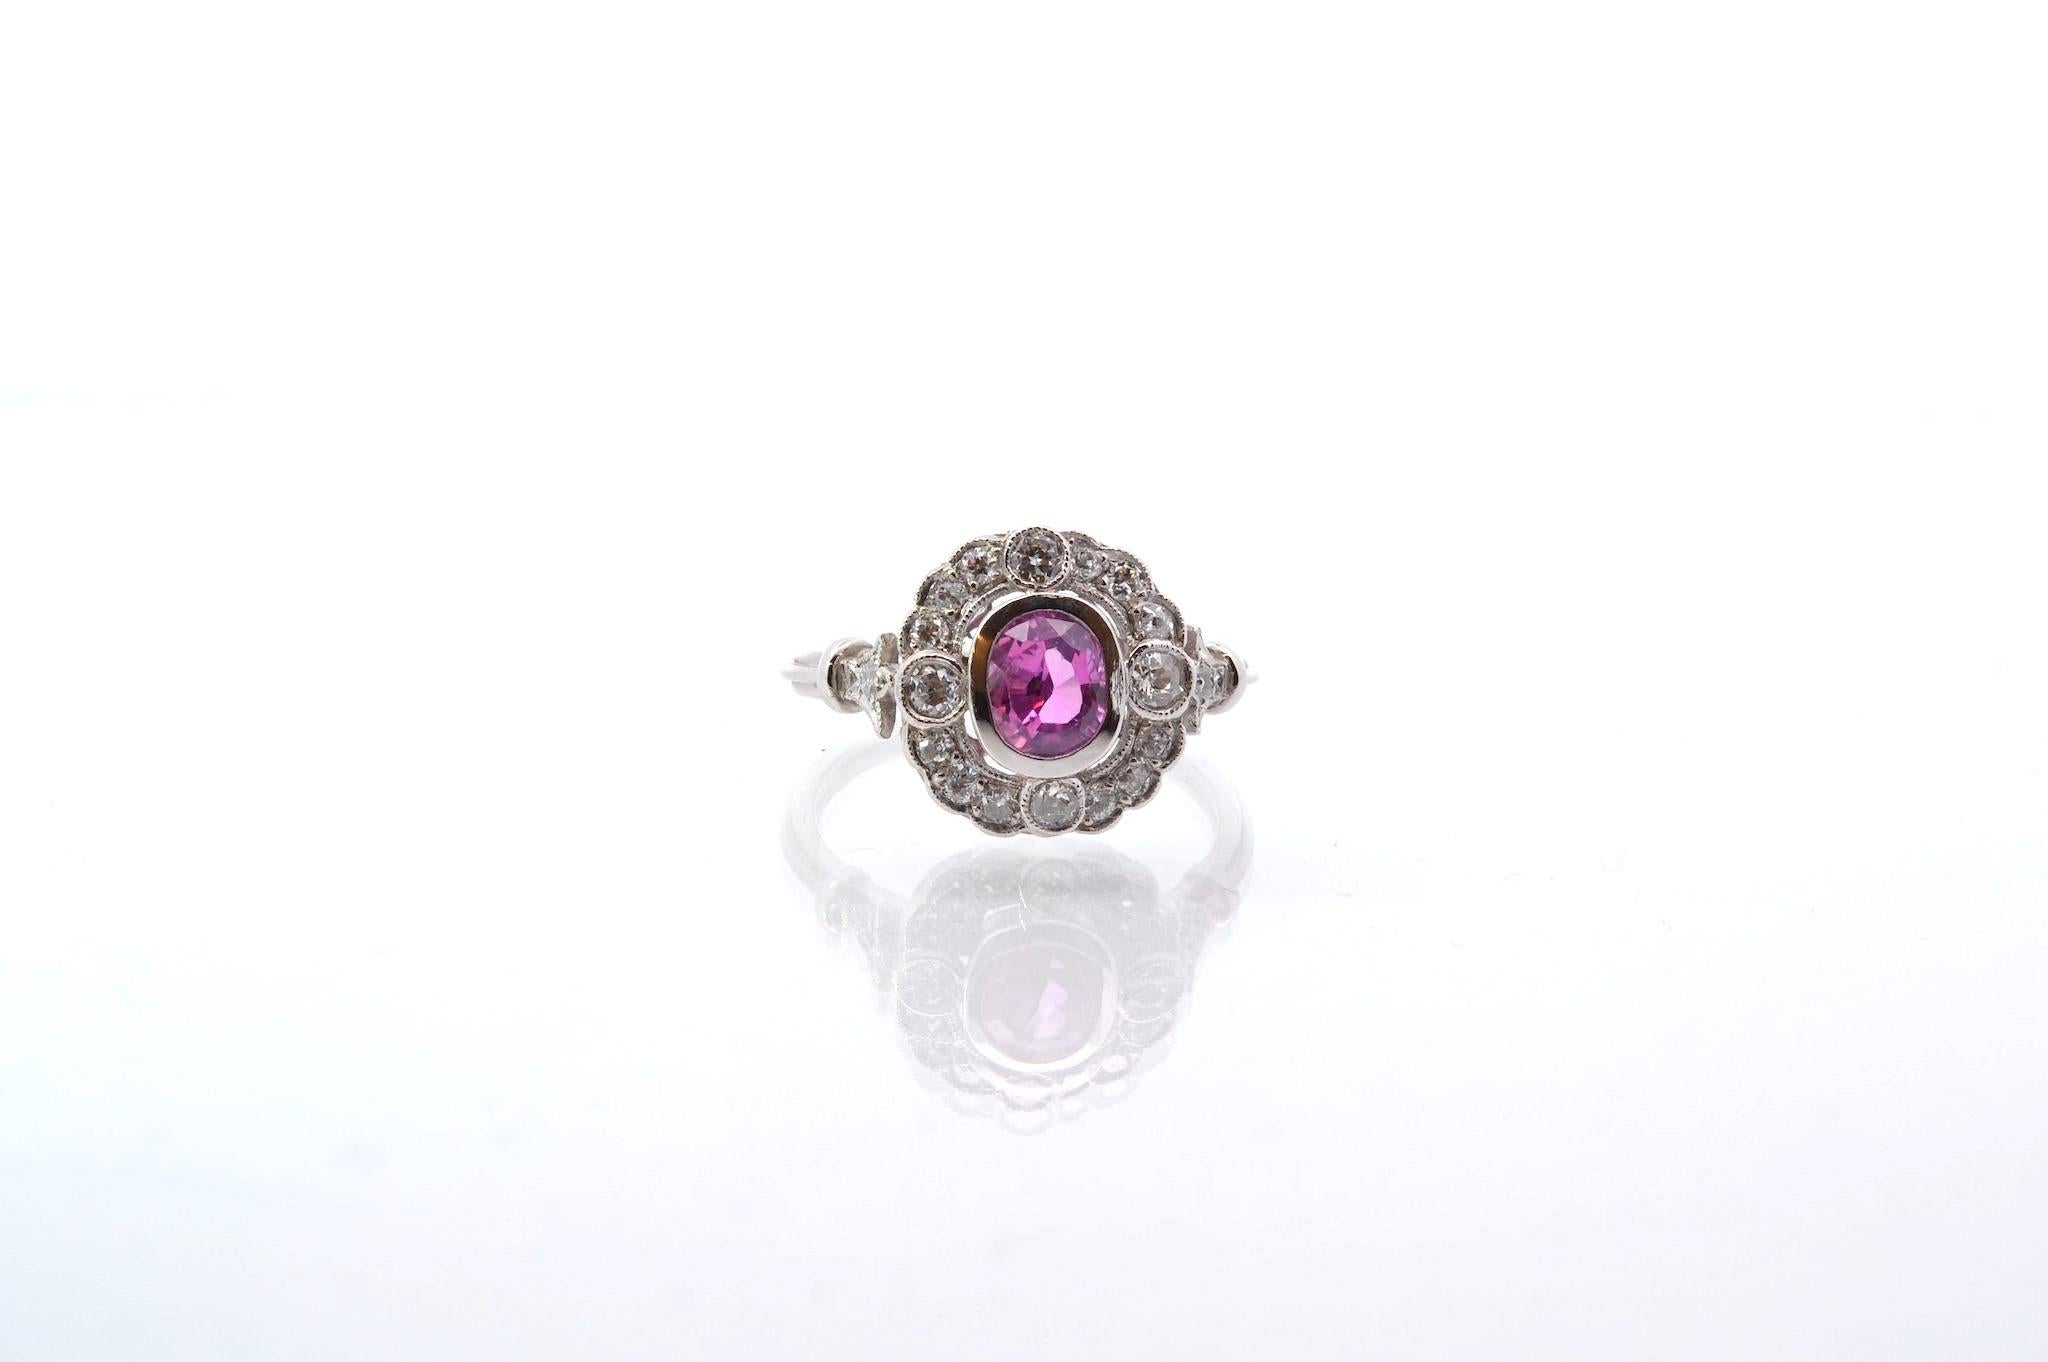 Edelsteine: 1 rosa Saphir von 1,1ct, 18 Diamanten: 0,50ct
MATERIAL: Platin
Abmessungen: 1,3cm
Gewicht: 5,6 g
Zeitraum: Neuerer Art-Deco-Stil (handgefertigt)
Größe: 55 (freie Größenwahl)
Zertifikat
Bez.: 25308